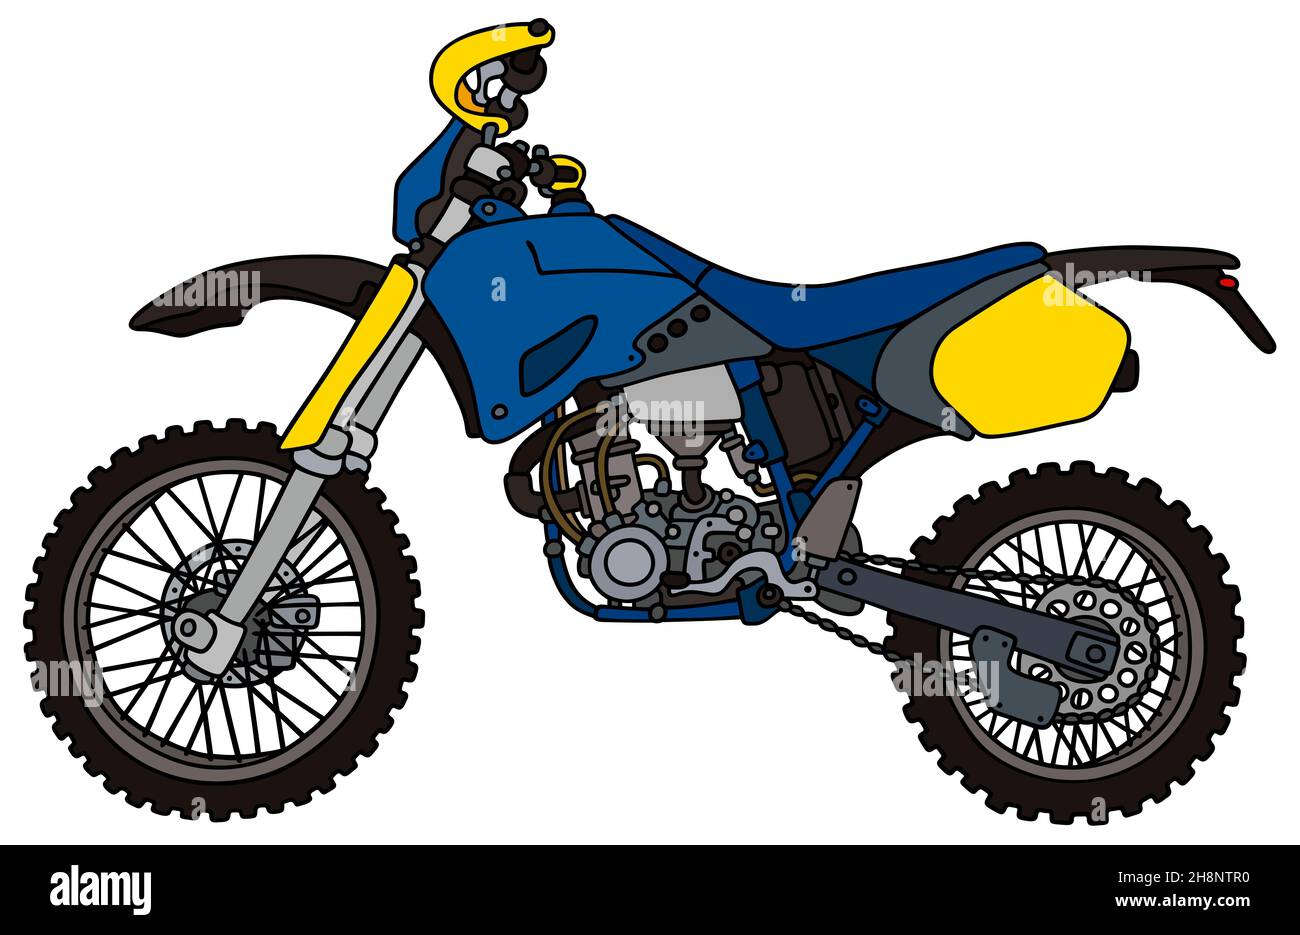 Disegno a mano di una moto da motocross da corsa blu - non un vero tipo Foto Stock